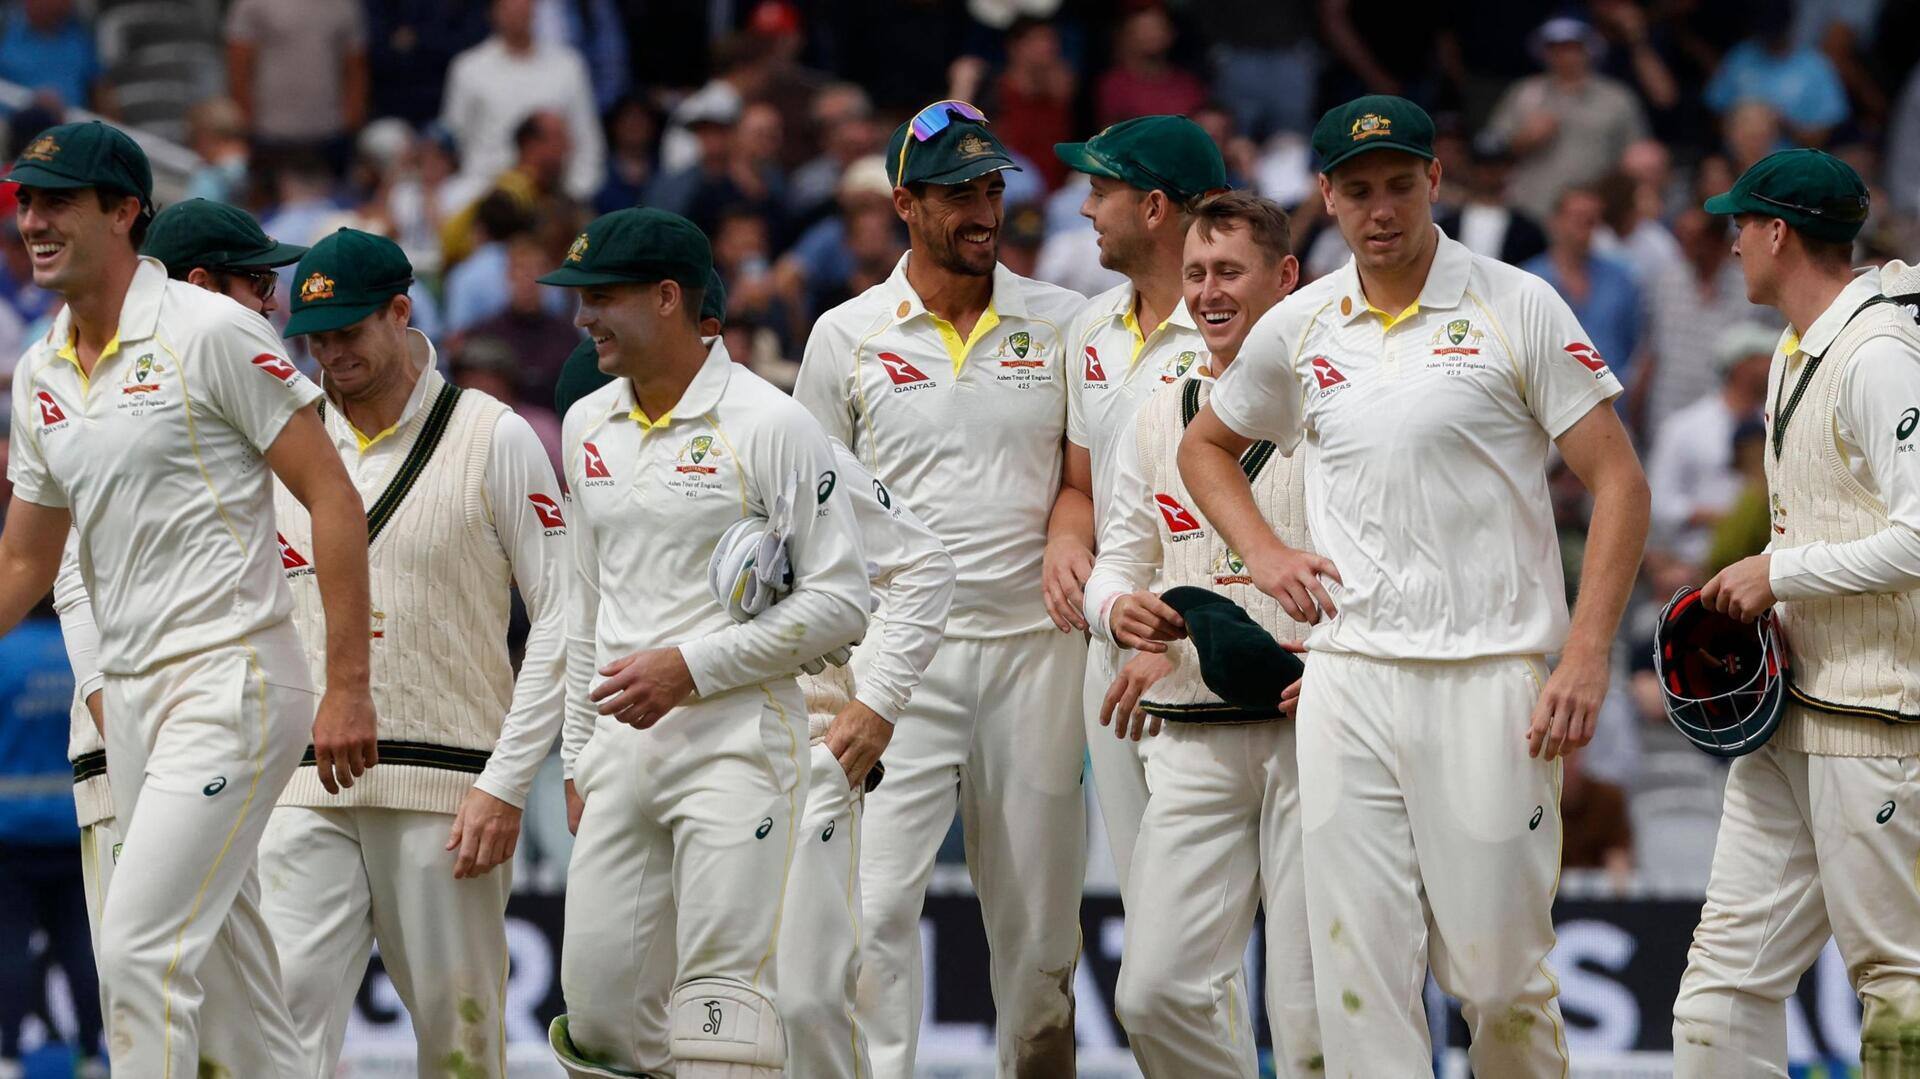 लॉर्ड्स में 2013 के बाद से इंग्लैंड के खिलाफ टेस्ट नहीं हारा है ऑस्ट्रेलिया, जानिए प्रदर्शन 